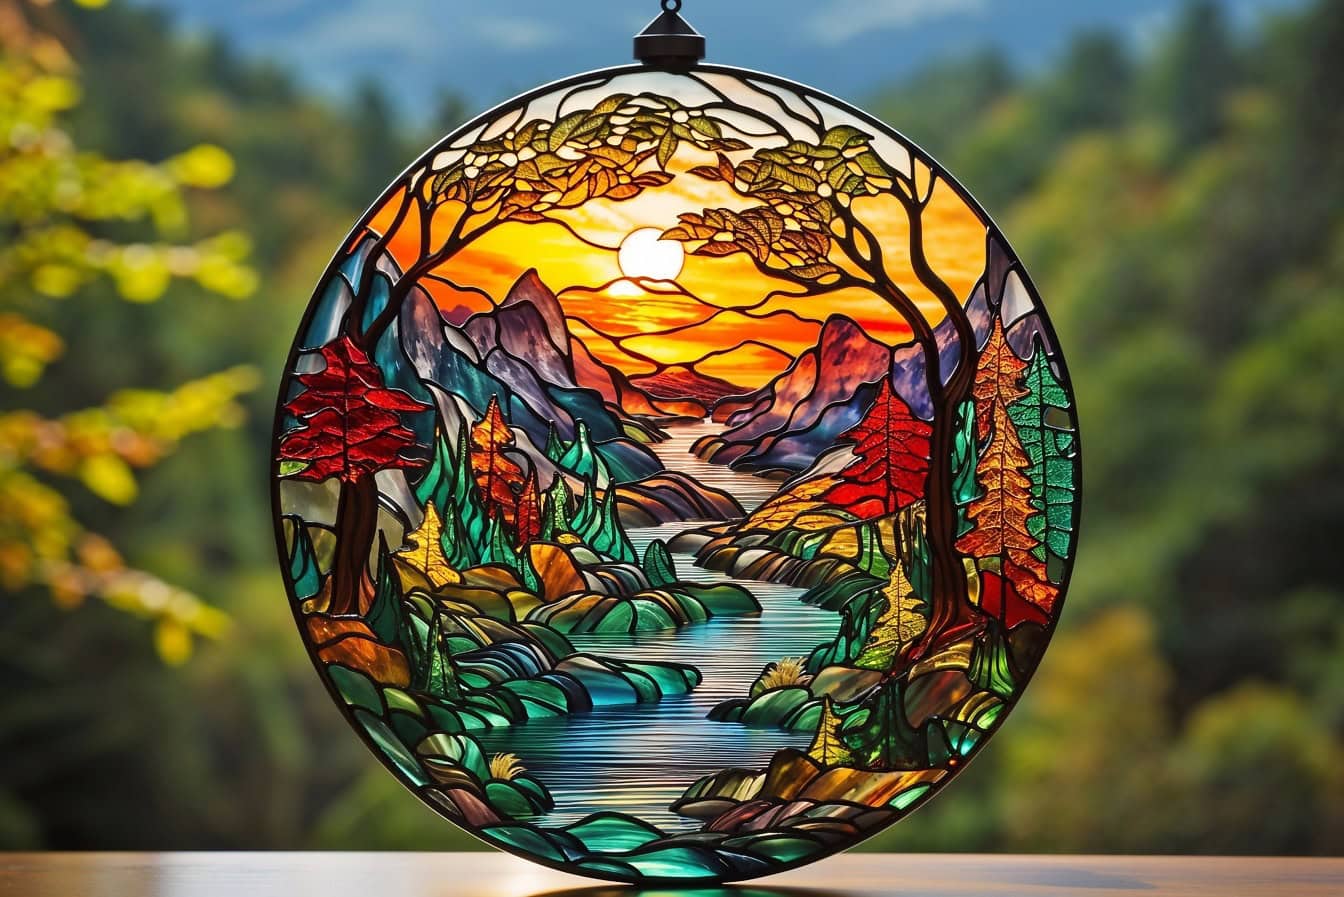 Decorazione in vetro colorato rotondo fatto a mano con un tema di fiume e montagne in autunno con raggi di sole come retroilluminazione